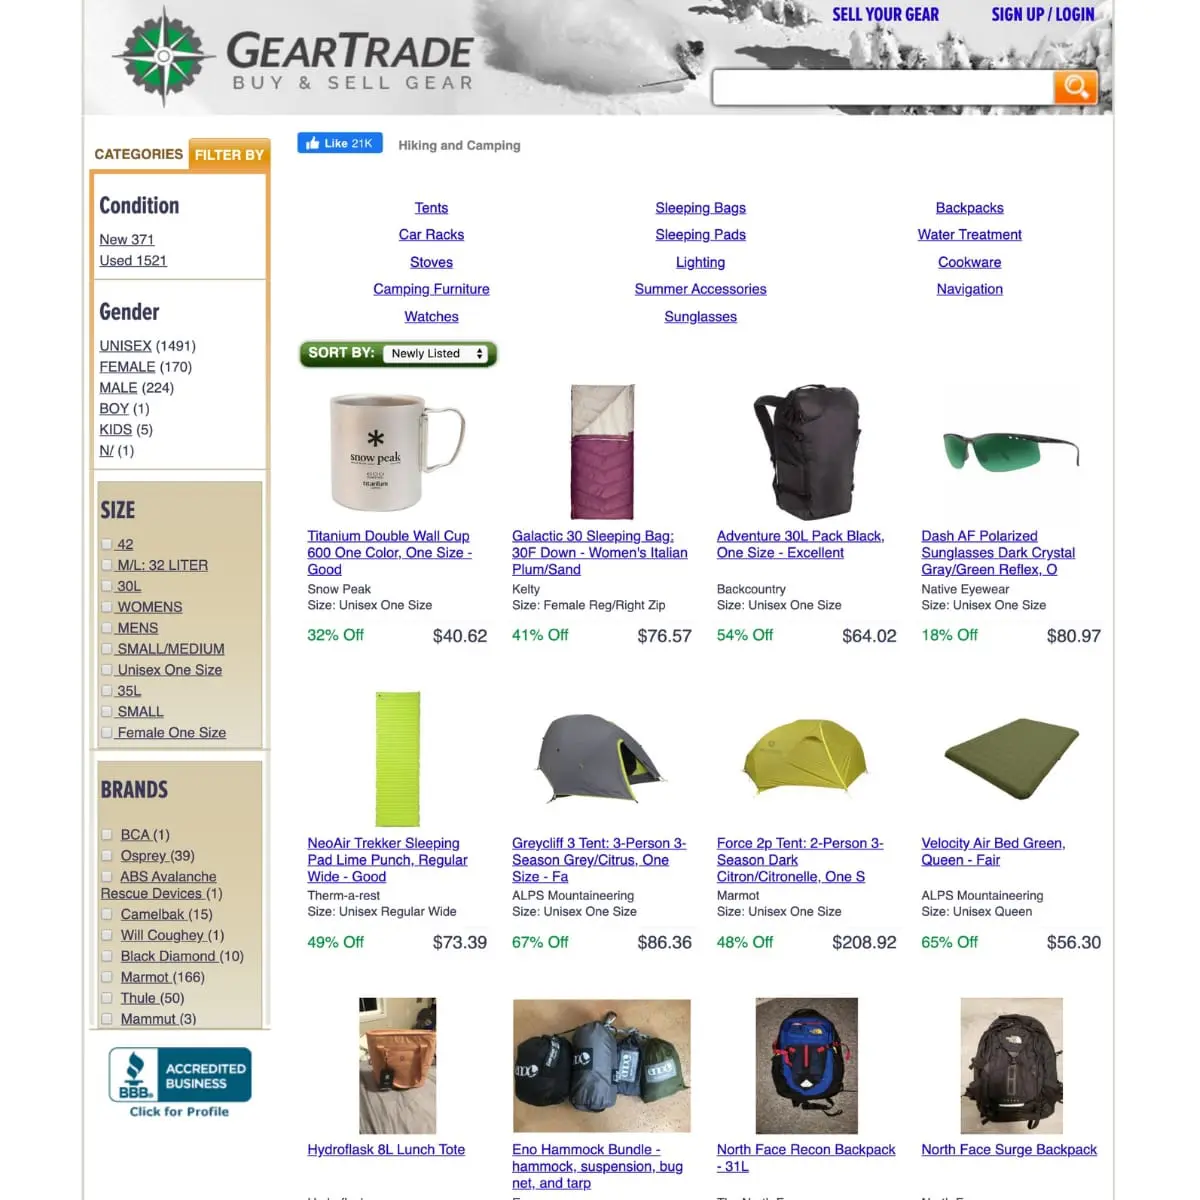 Screen shot of Gear Trade website